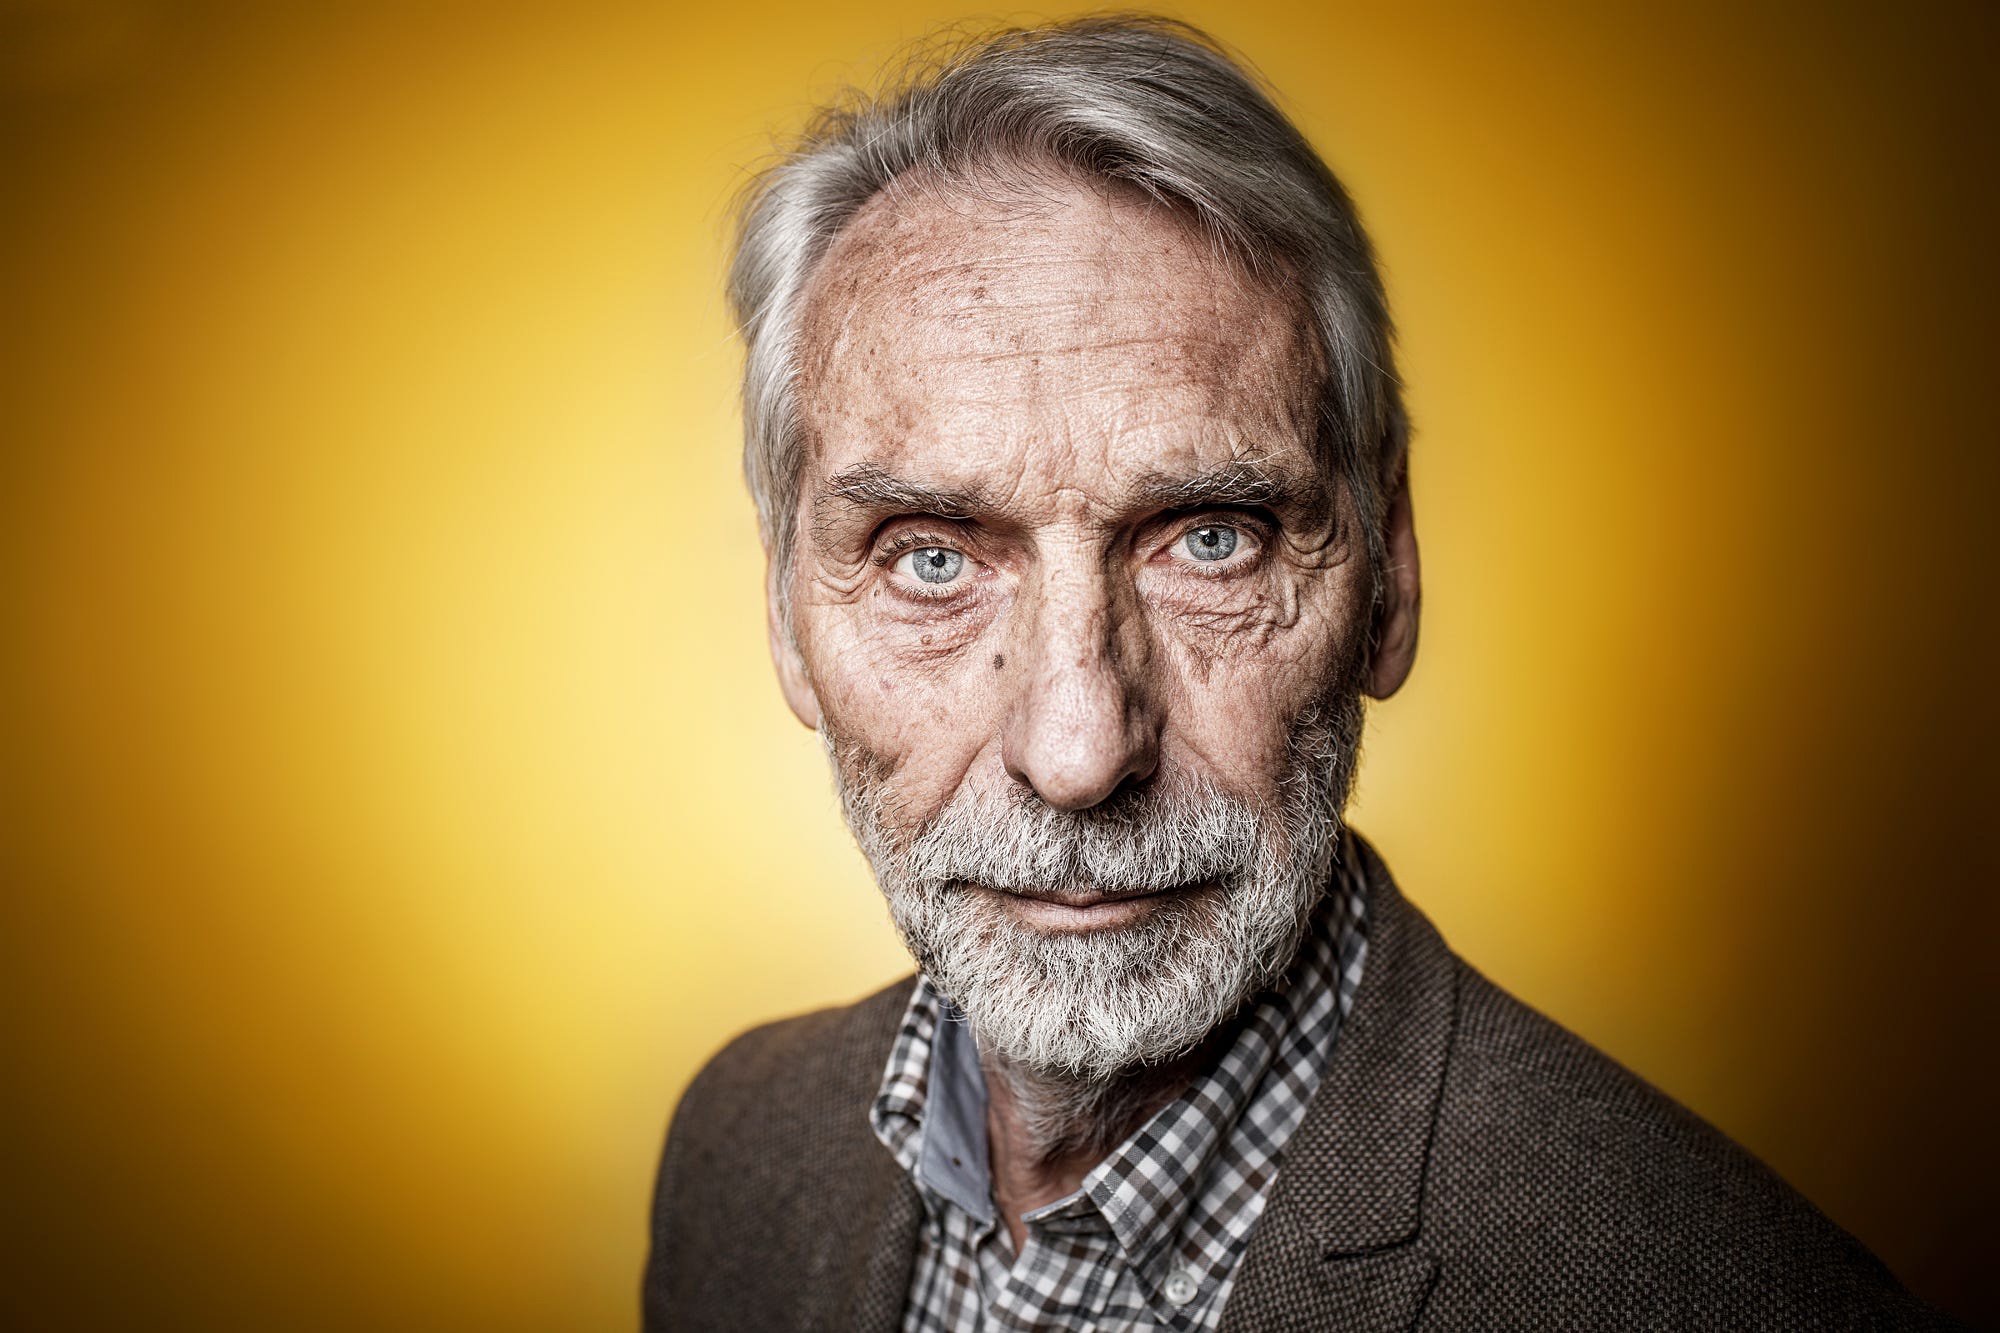 75 лет возраст мужчины. Портрет человека. Портреты людей фото. Фотопортрет старика. Портер человека.